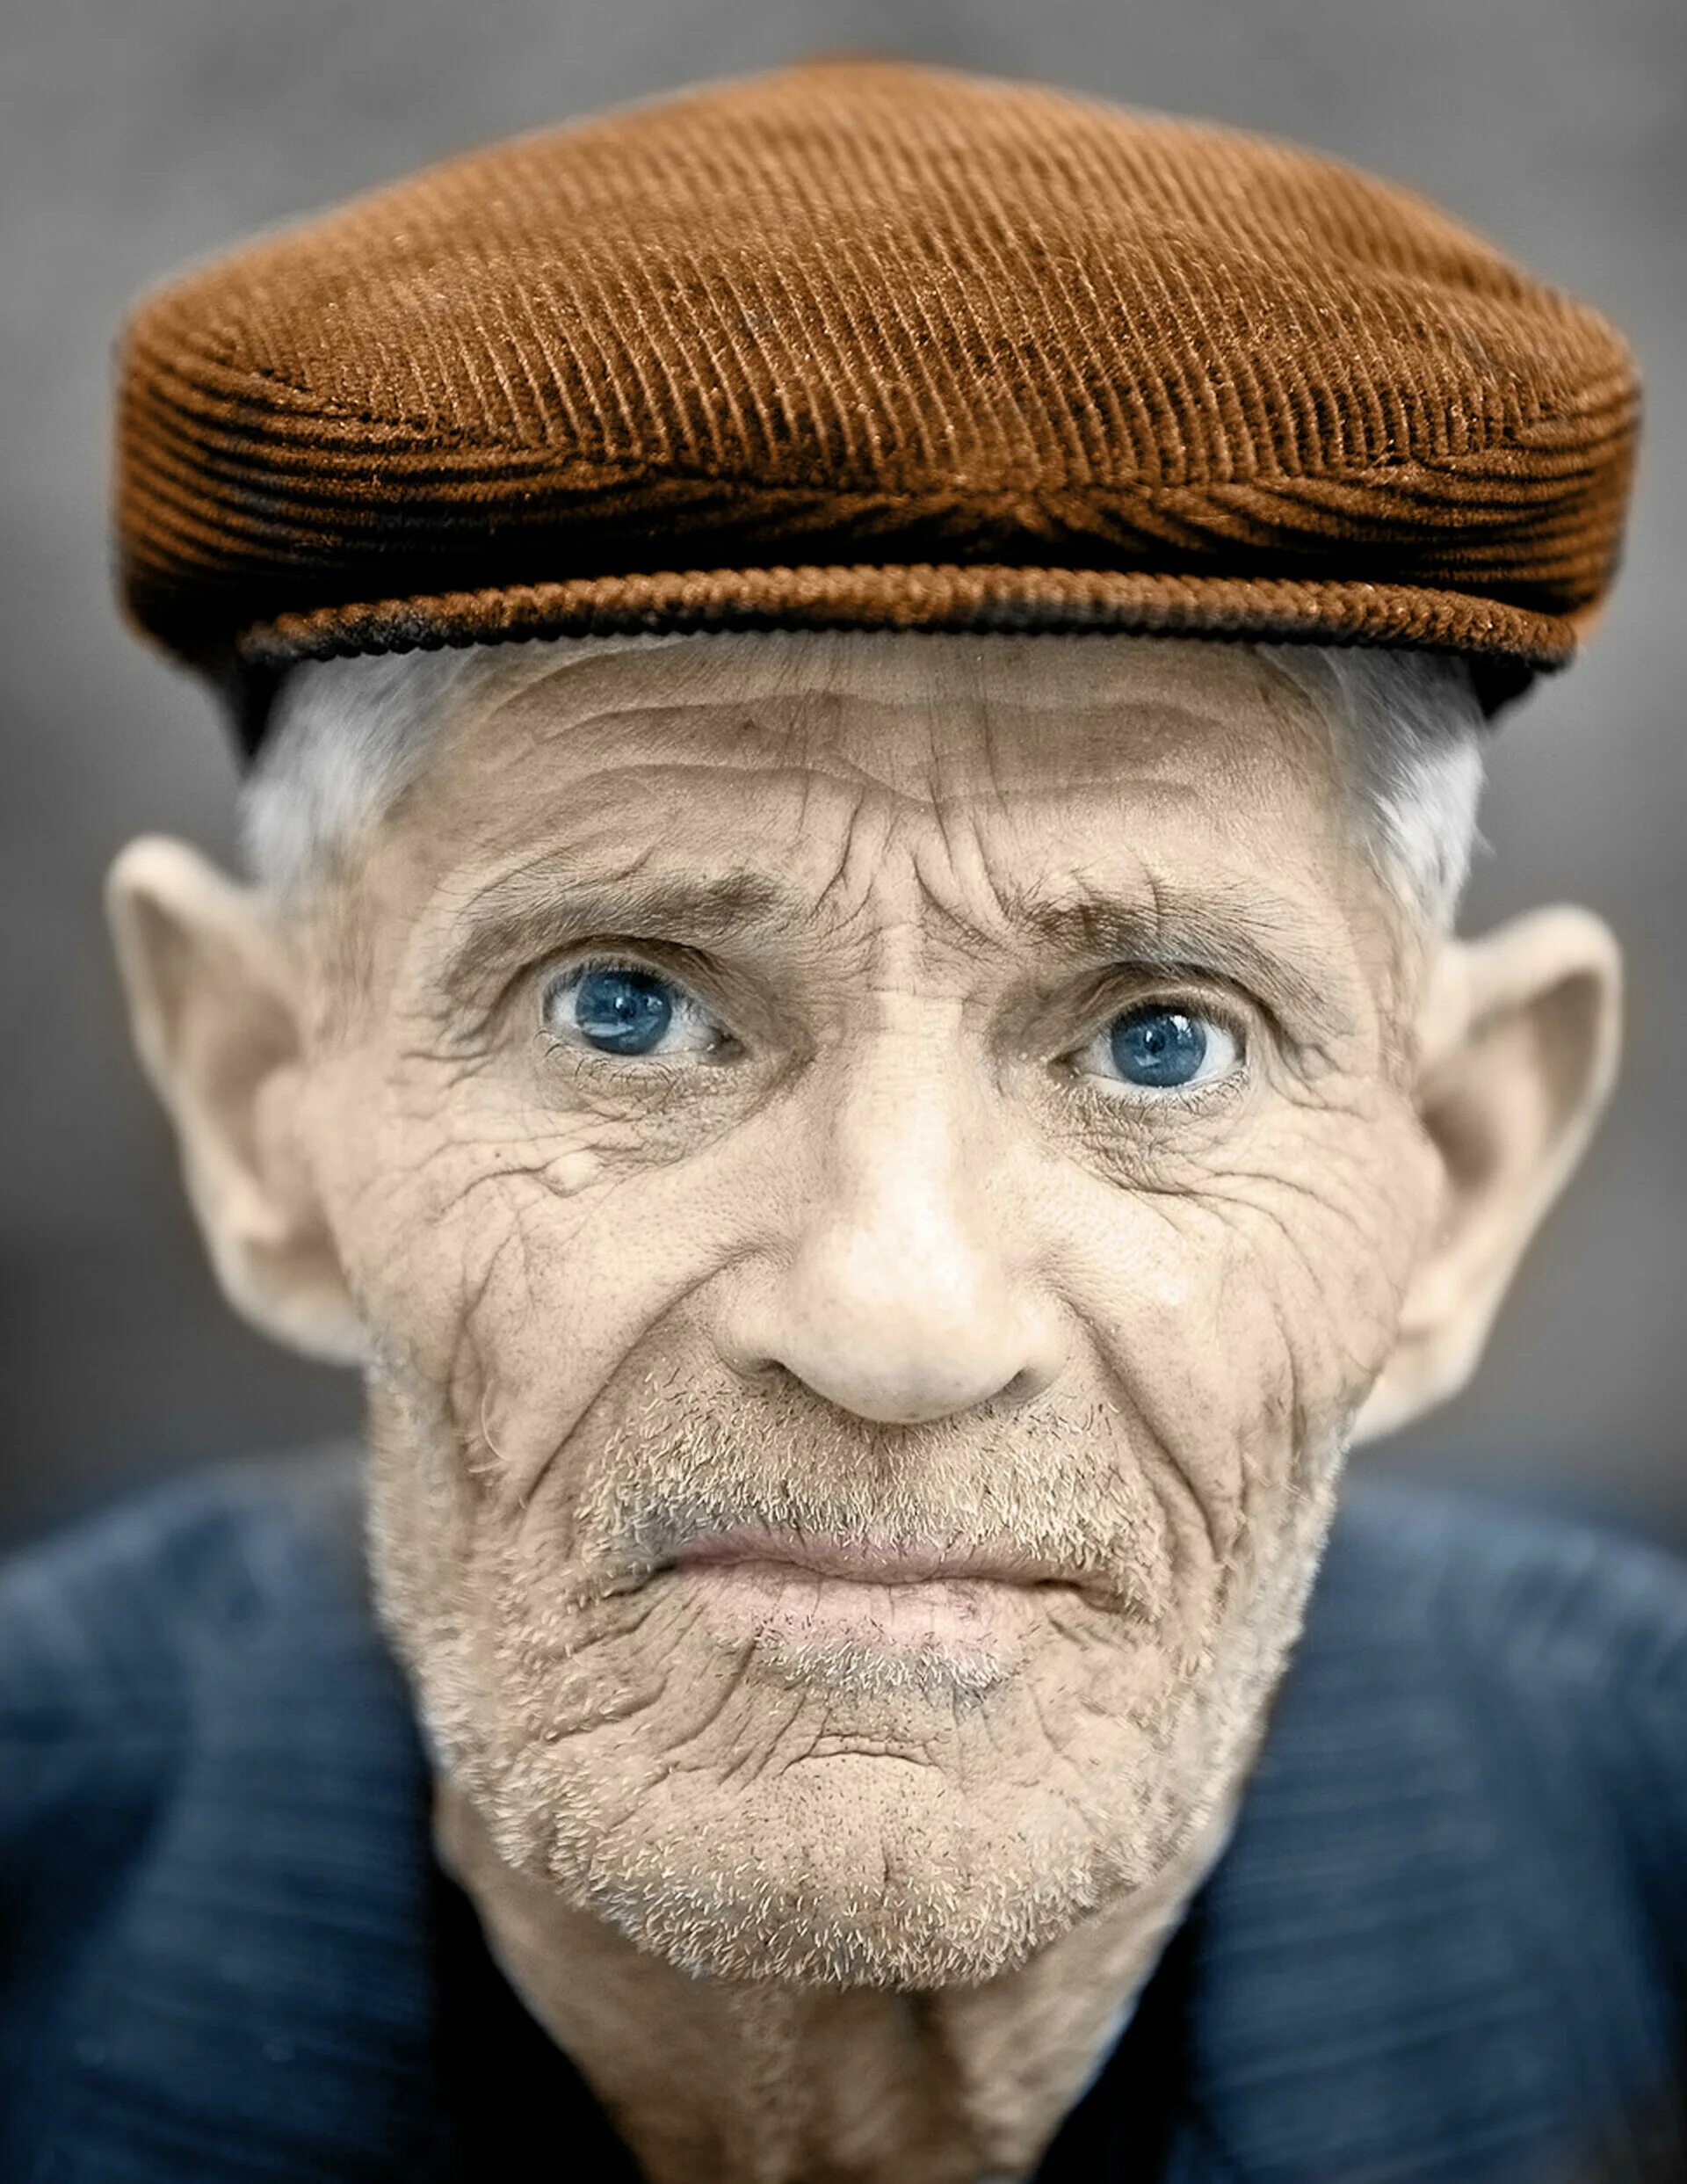 Tiff old. Лицо старика. Портрет человека. Пожилой мужчина. Фотопортрет старика.